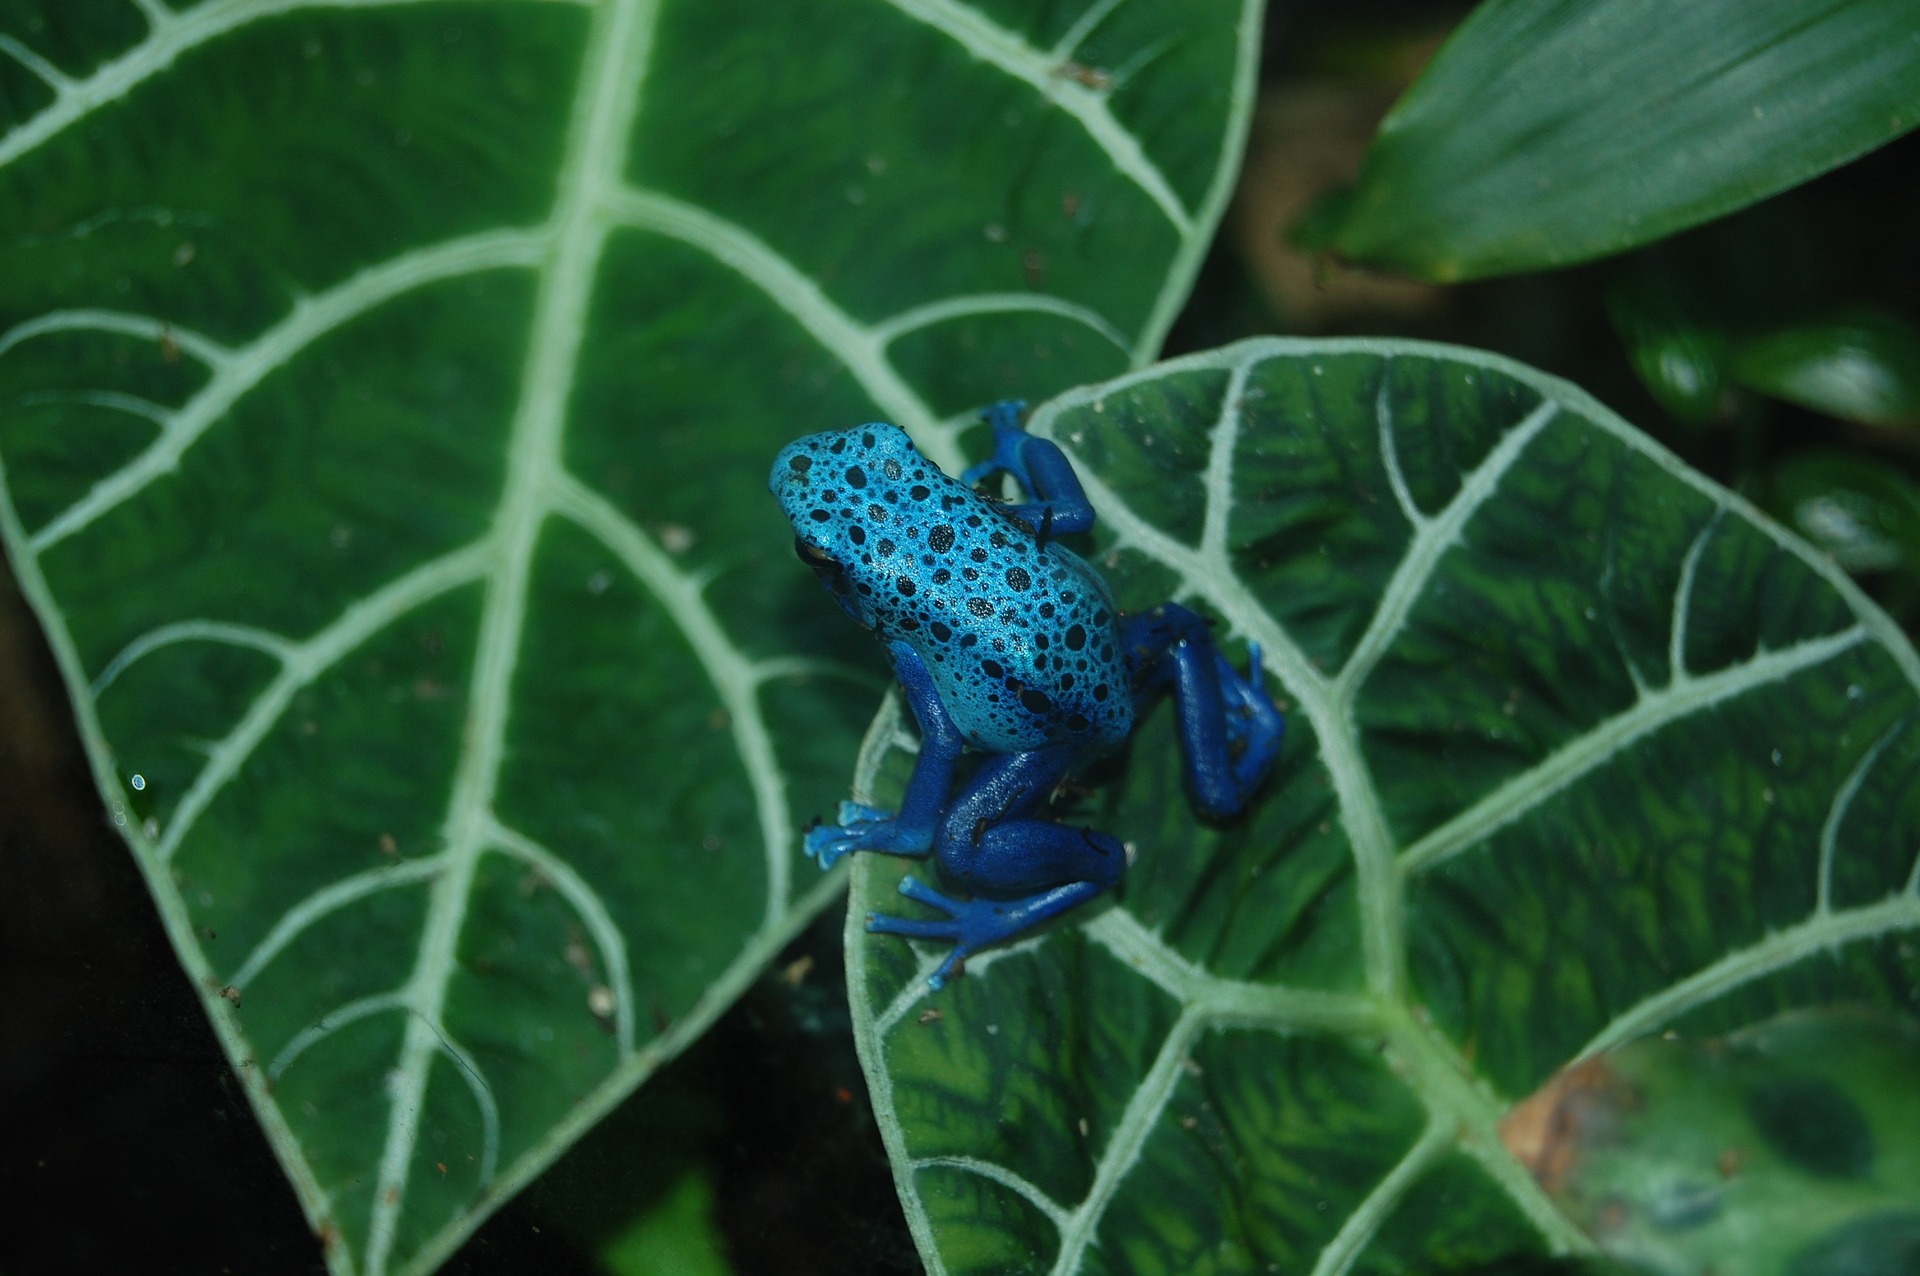 Blue poison dart frog on leaf